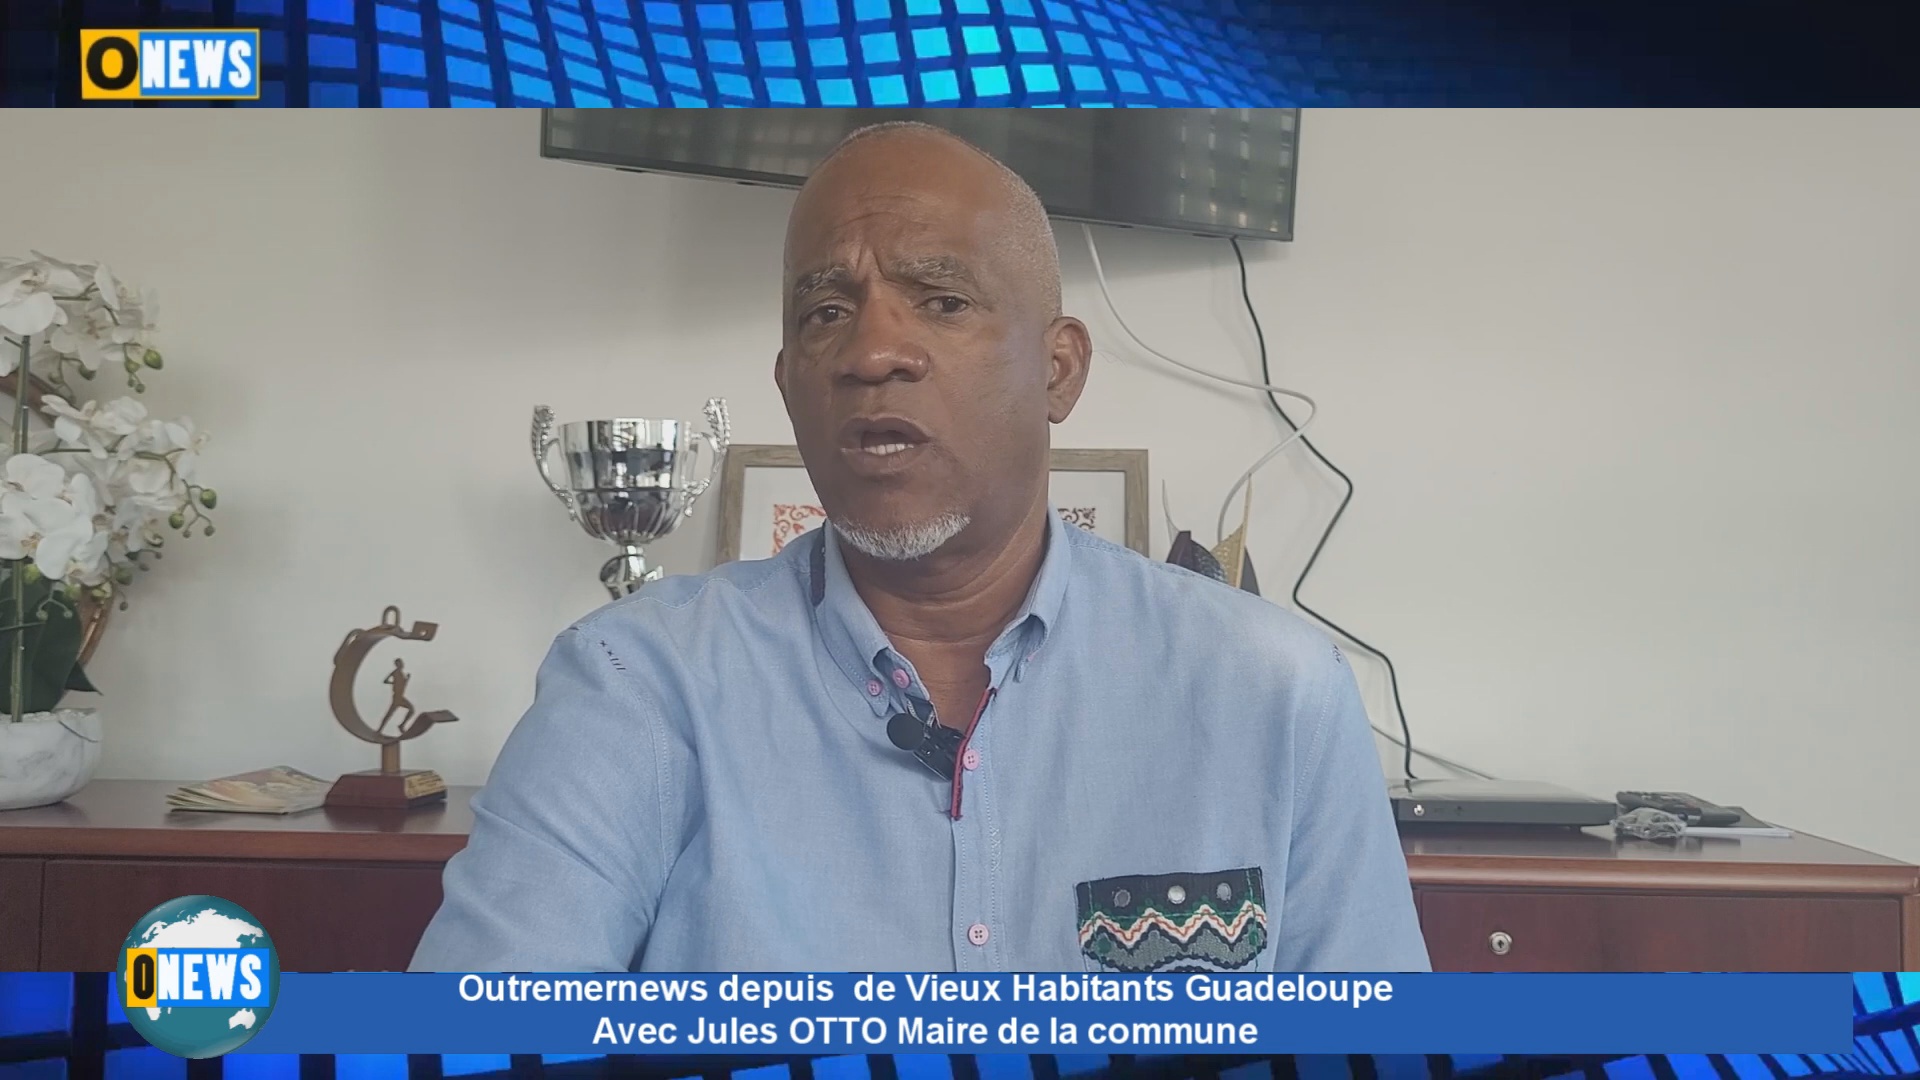 [Vidéo] Outremernews depuis Vieux Habitants Guadeloupe avec Jules OTTO Maire de la commune